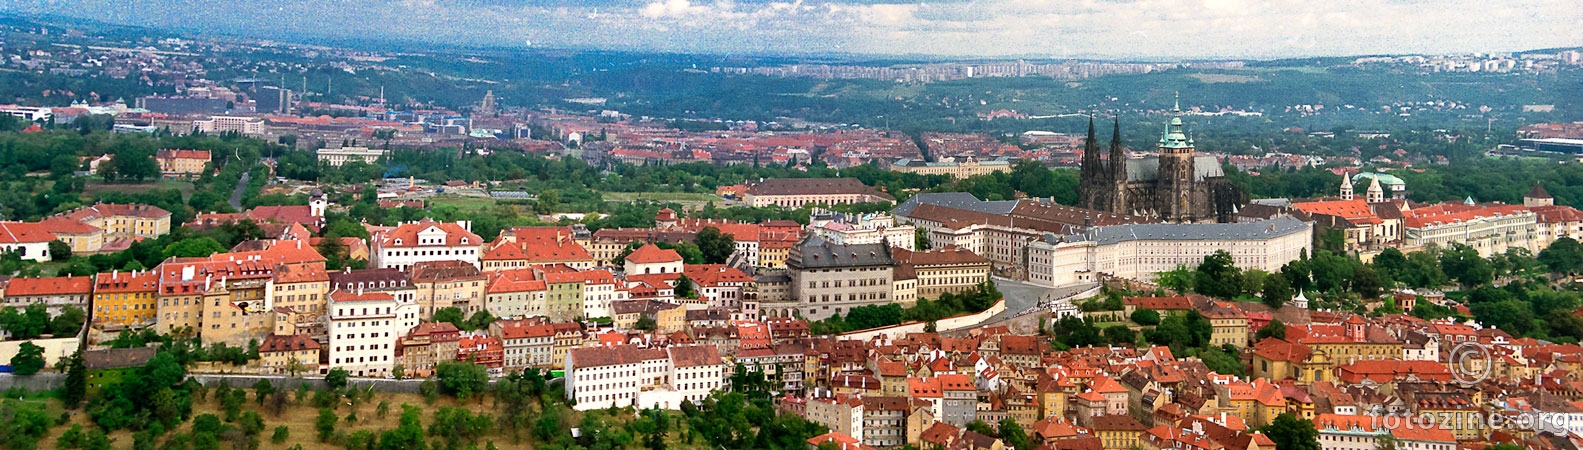 Prag 1995